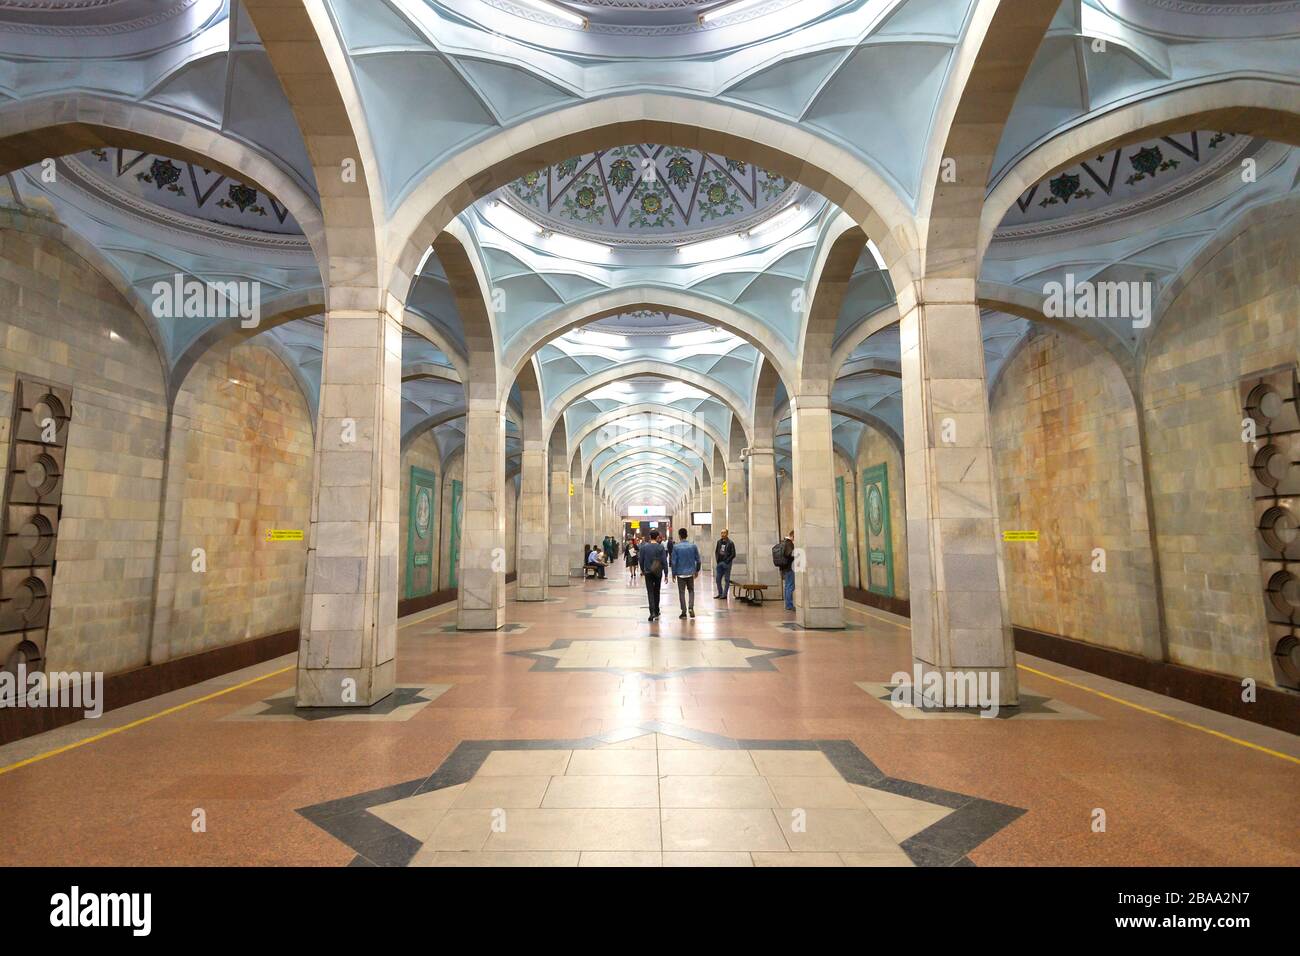 Station de métro Alisher Navoi à Tachkent, Ouzbékistan. En l'honneur du poète musulman du même nom. Plate-forme de métro construite avec un plafond bombé symétrique. Banque D'Images